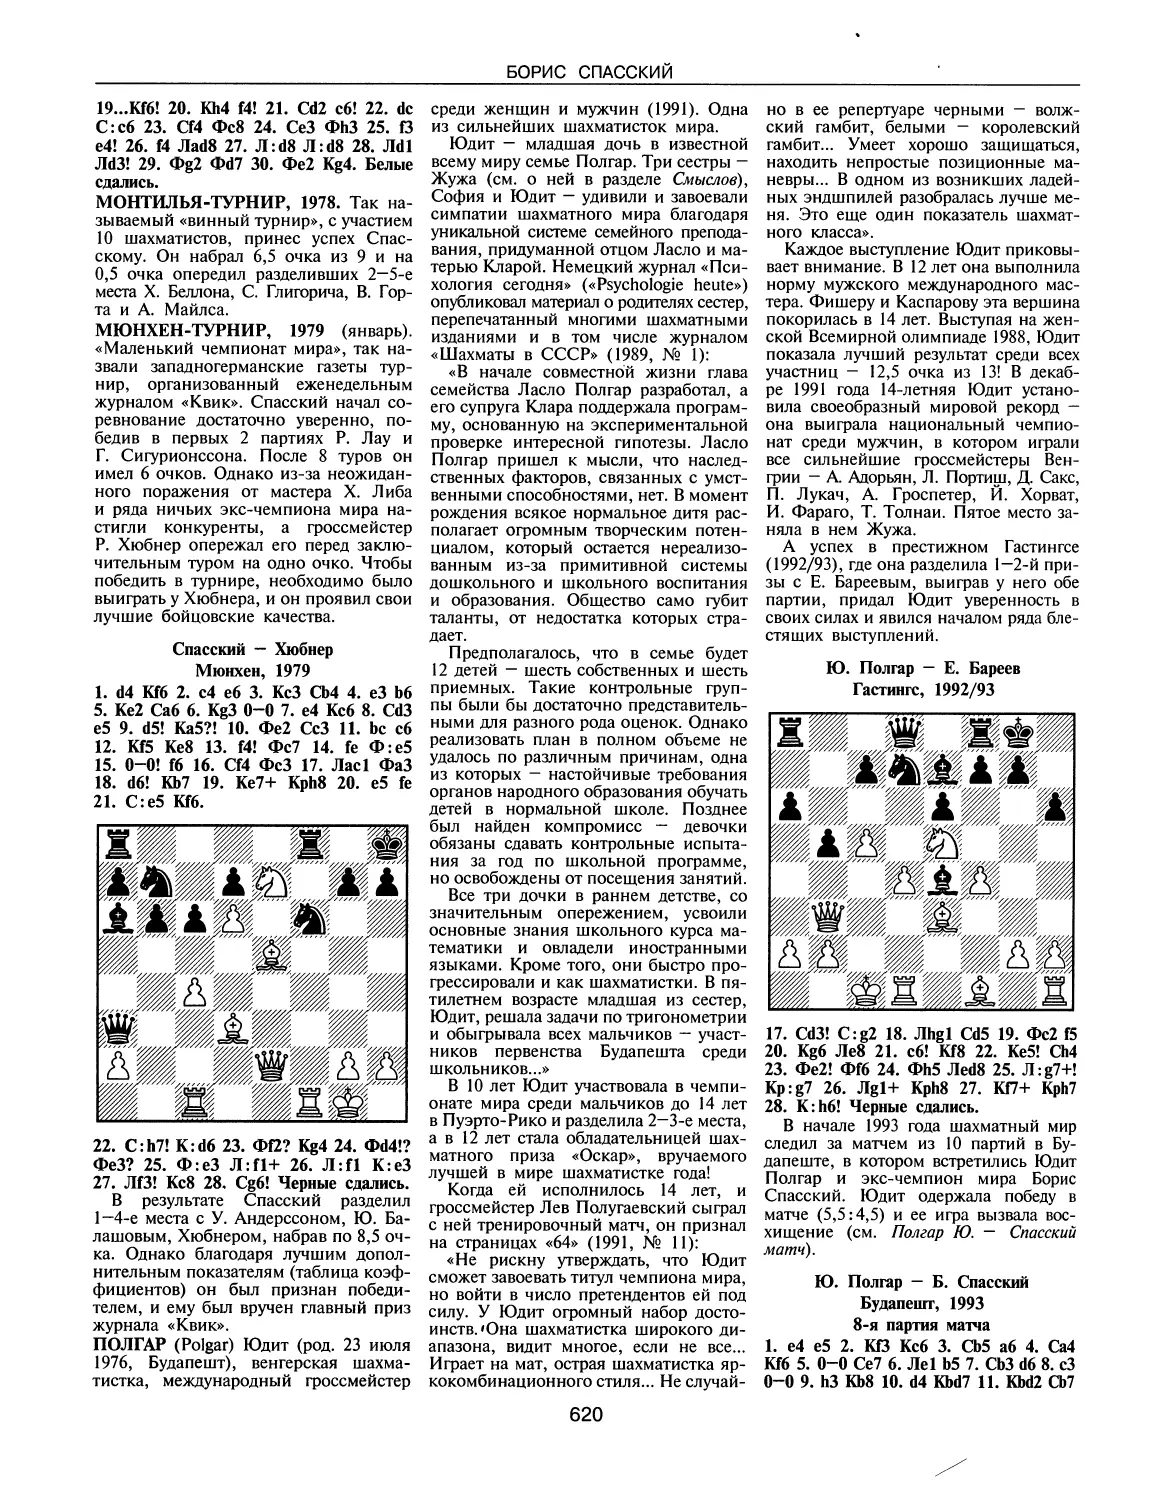 Монтилья-турнир, 1978
Мюнхен-турнир, 1979
Полгар Ю.